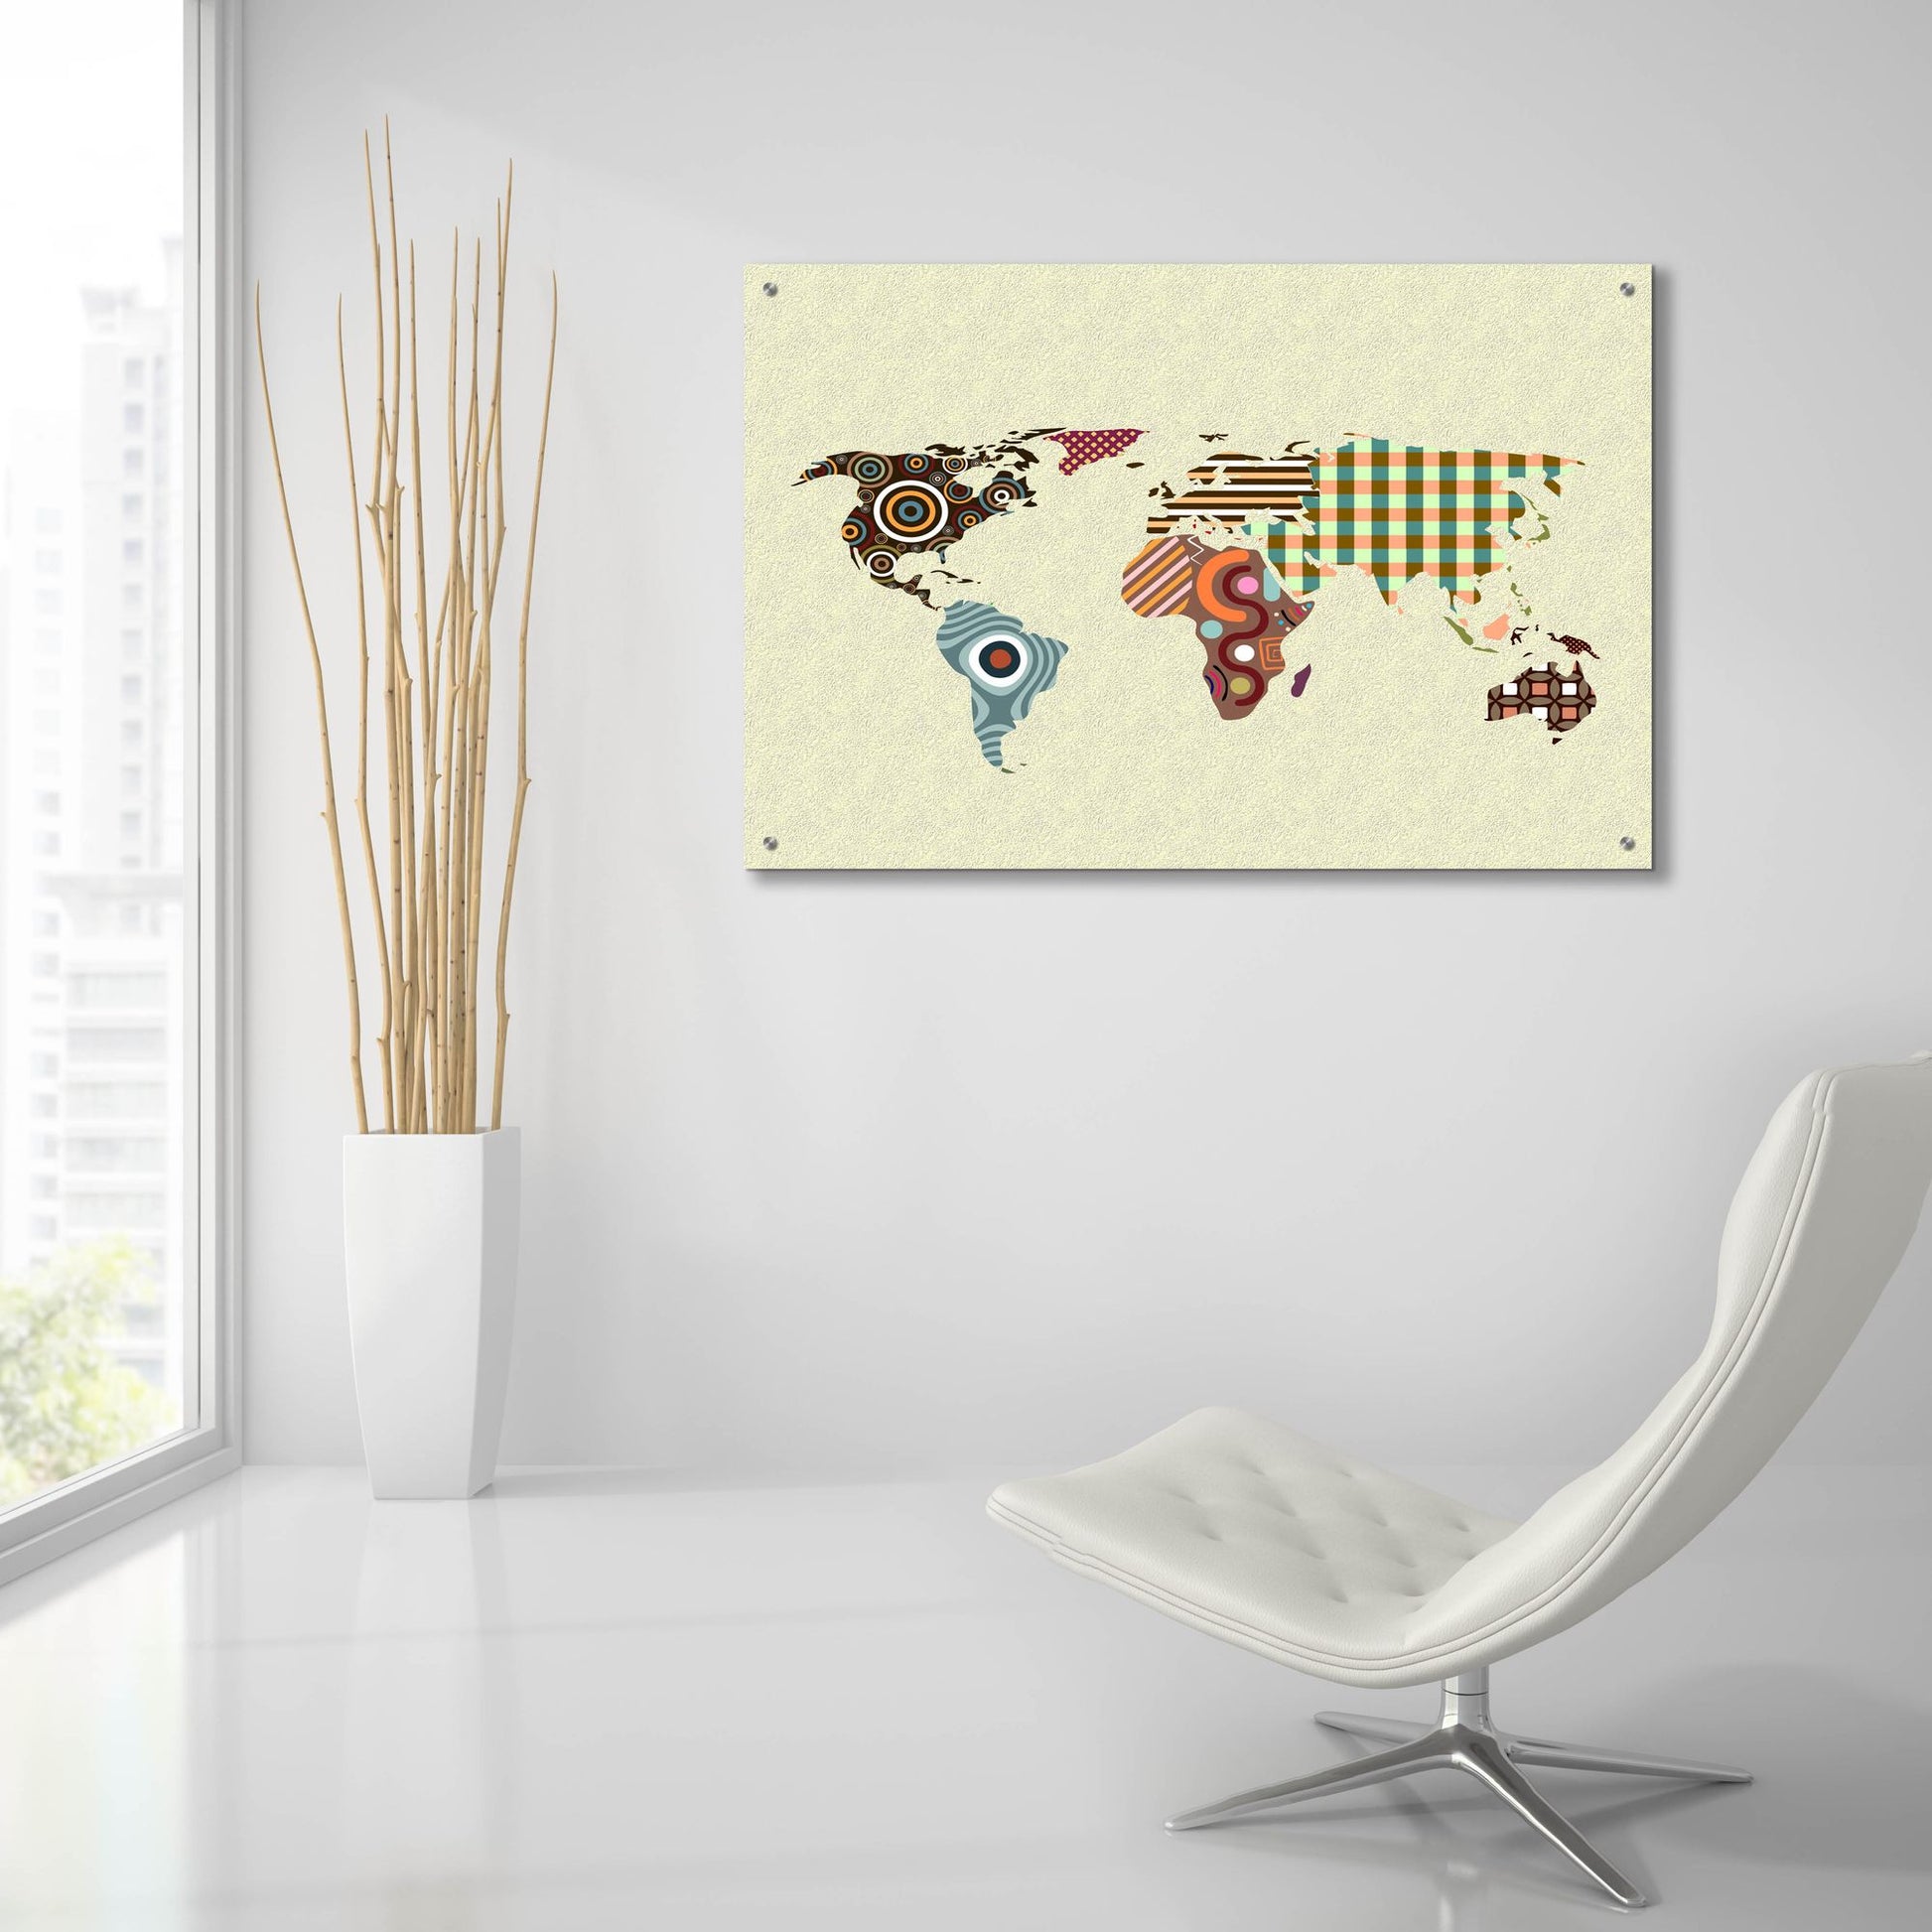 Epic Art 'World Map' by Lanre Adefioye, Acrylic Glass Wall Art,36x24